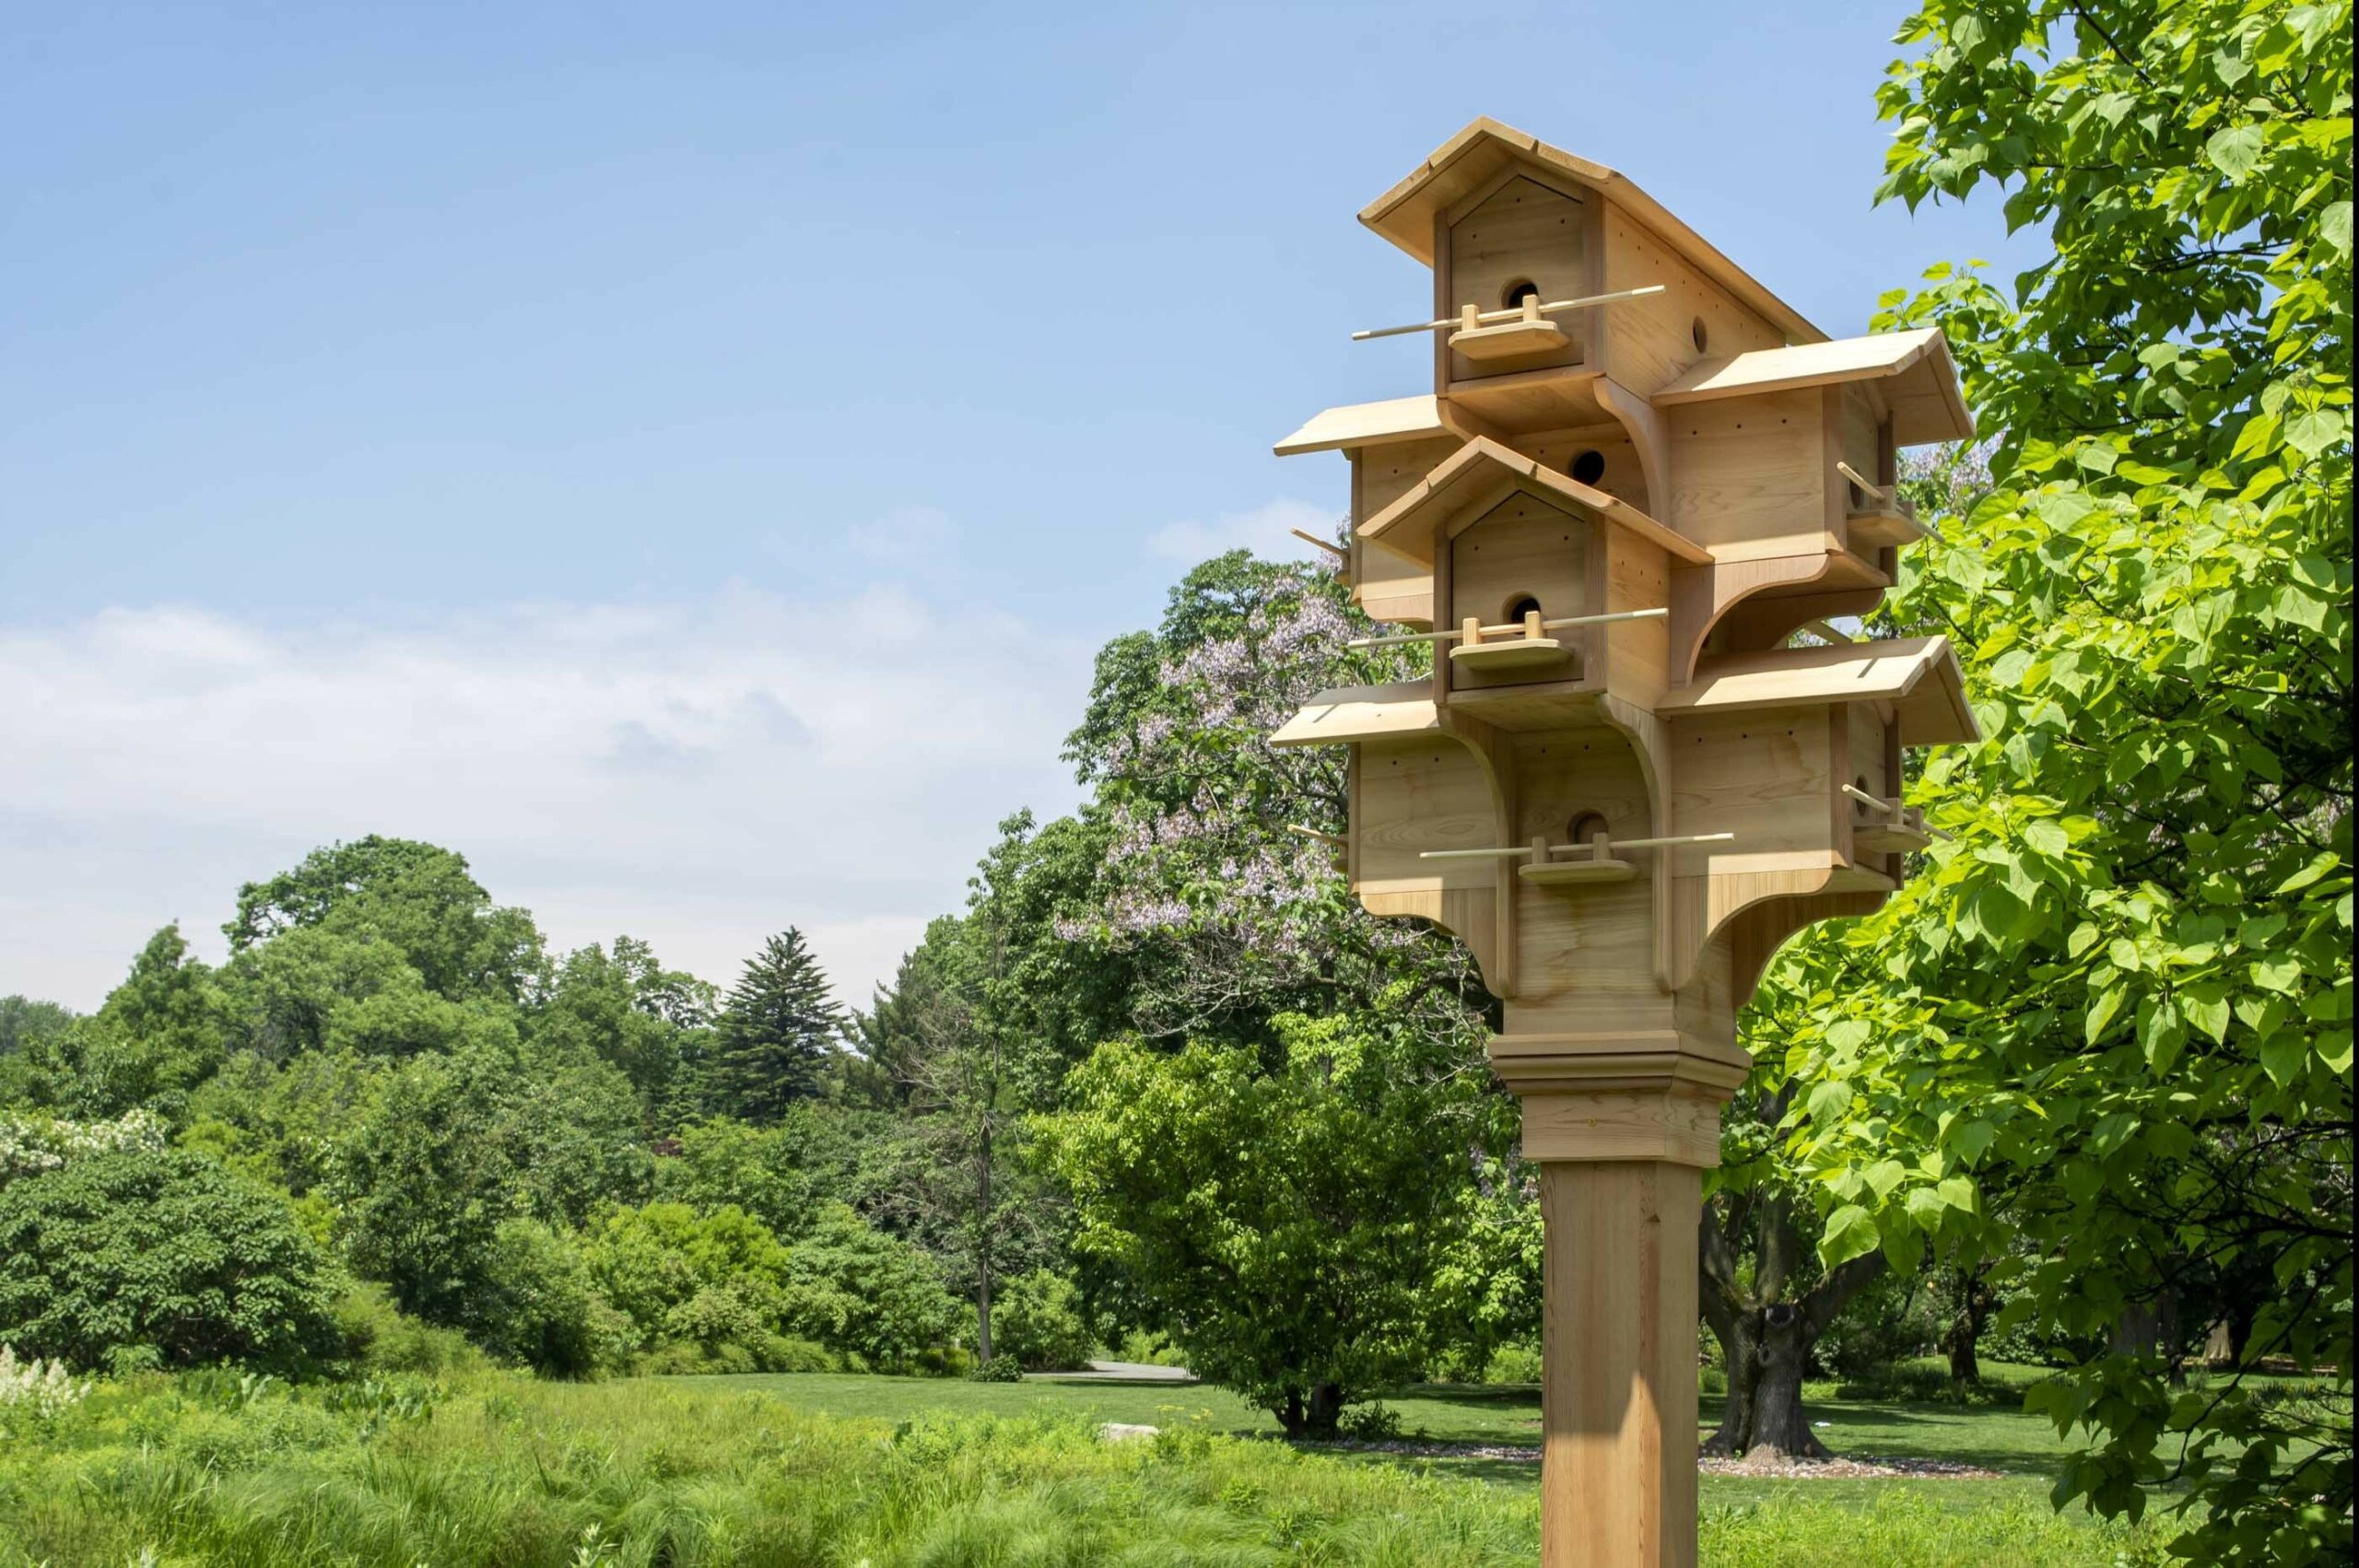 Architekci i artyści zaprojektowali 33 budki dla ptaków.